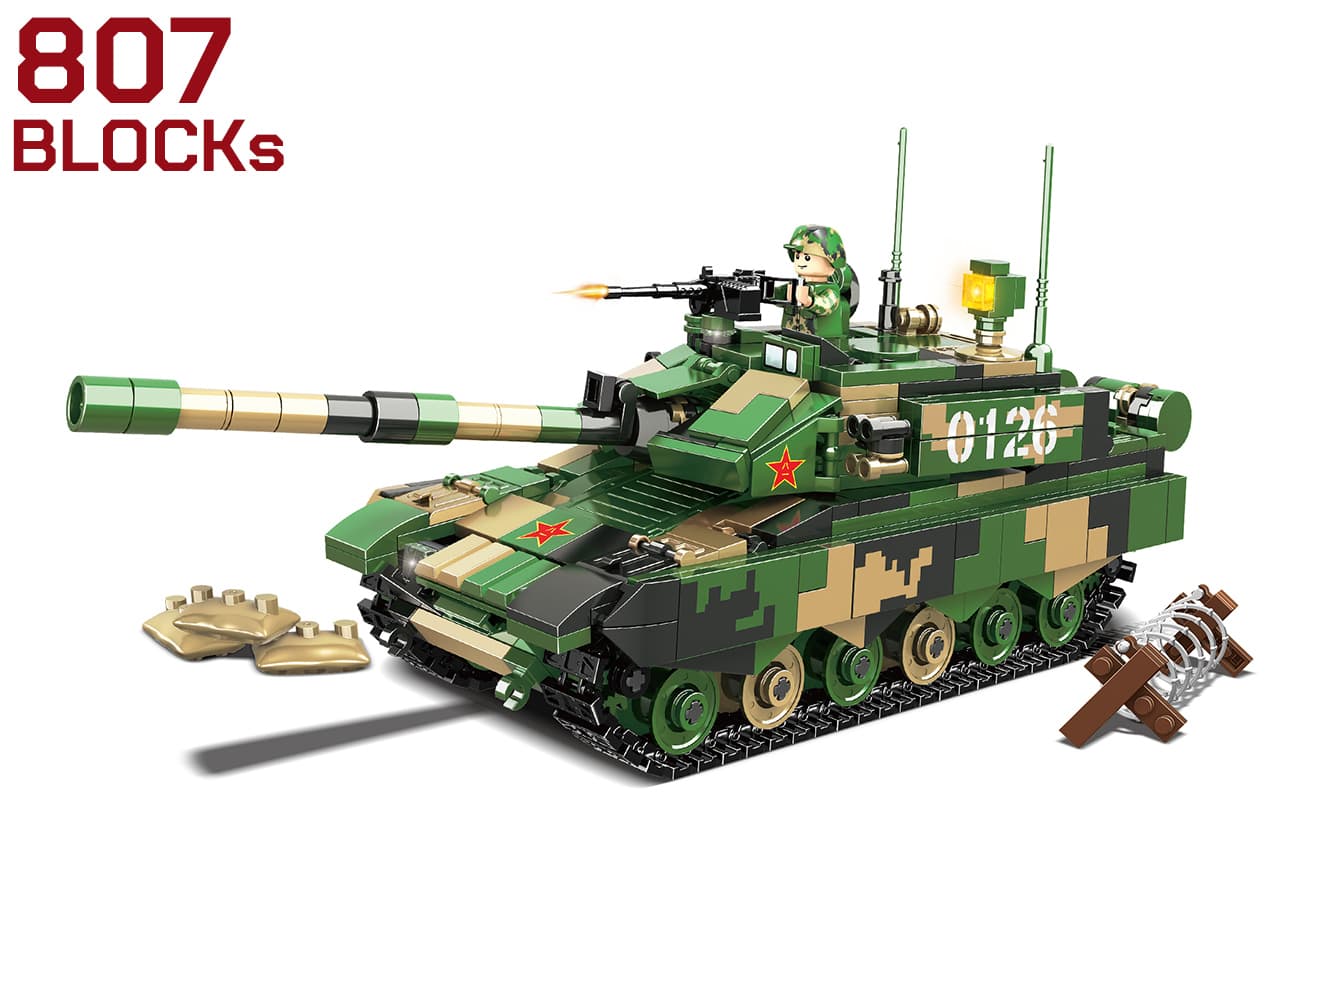 AFM ARMY ブロック トイ フィギア 組み立て モデル 模型 プラスチック 玩具 戦車 中国軍 中華人民共和国 99式戦車 ZTZ-99/WZ-123B JD-3 アクティブ防護システム  AFM ワールドタンクシリーズ 中国軍 ZTZ-99 99式主力戦車 807Blocks ◆中国軍タイプ99主力戦車 ミリタリー ジオラマ 組み立てブロック